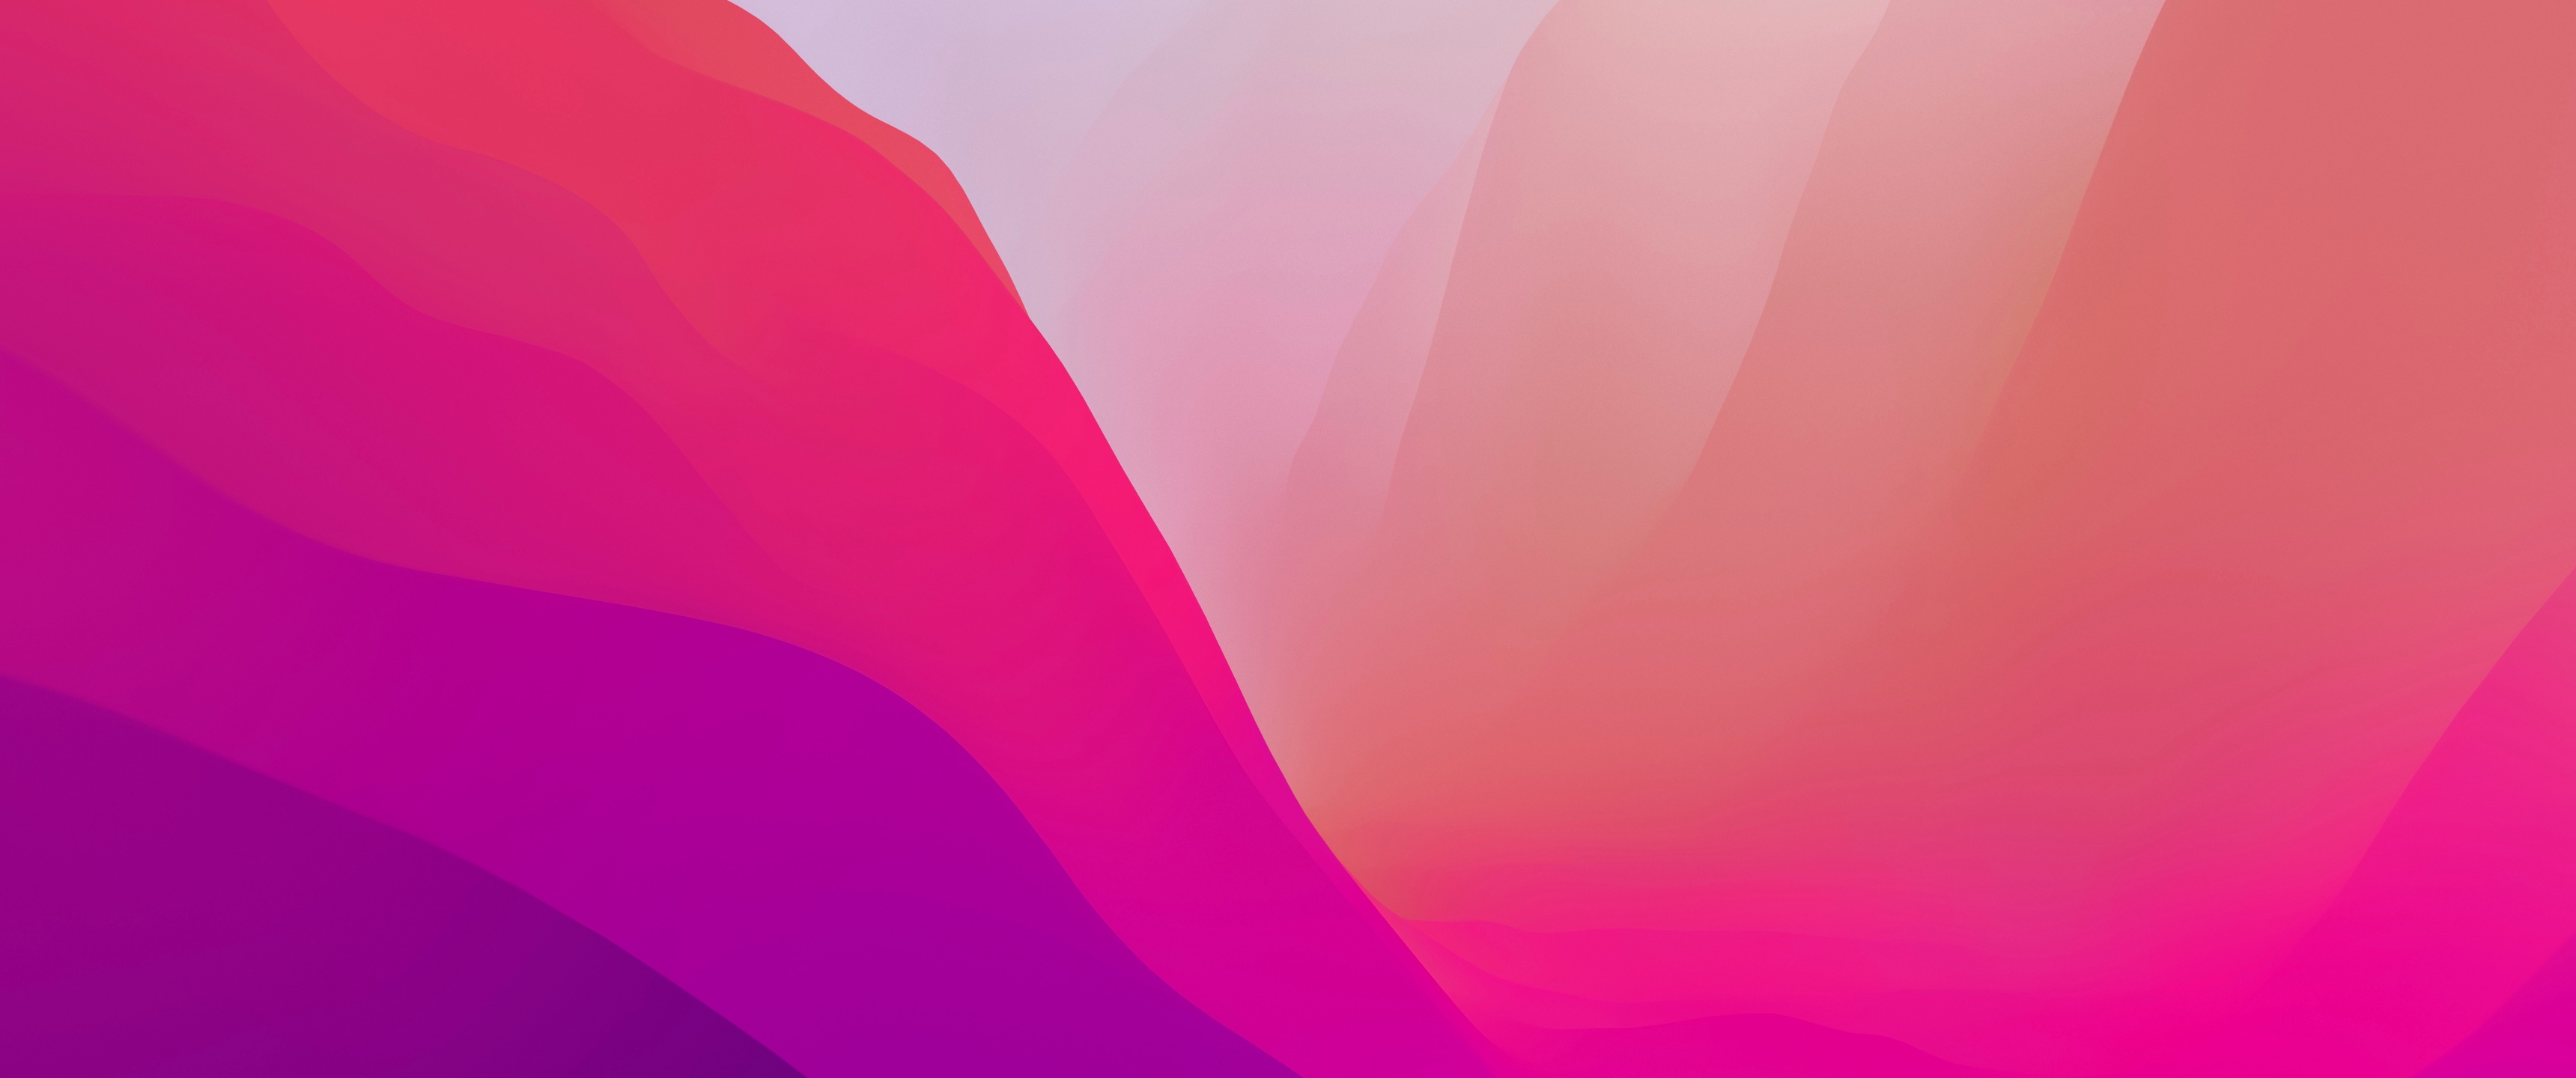 Góc nhìn của bạn với hình nền macOS Monterey Wallpaper - Pink Gradients sẽ là một trải nghiệm tuyệt vời với sự kết hợp của nhiều màu hồng gradient xinh đẹp. Hãy cùng khám phá những chi tiết độc đáo và tinh tế trong hình ảnh này để tạo cảm hứng cho ngày mới của bạn.